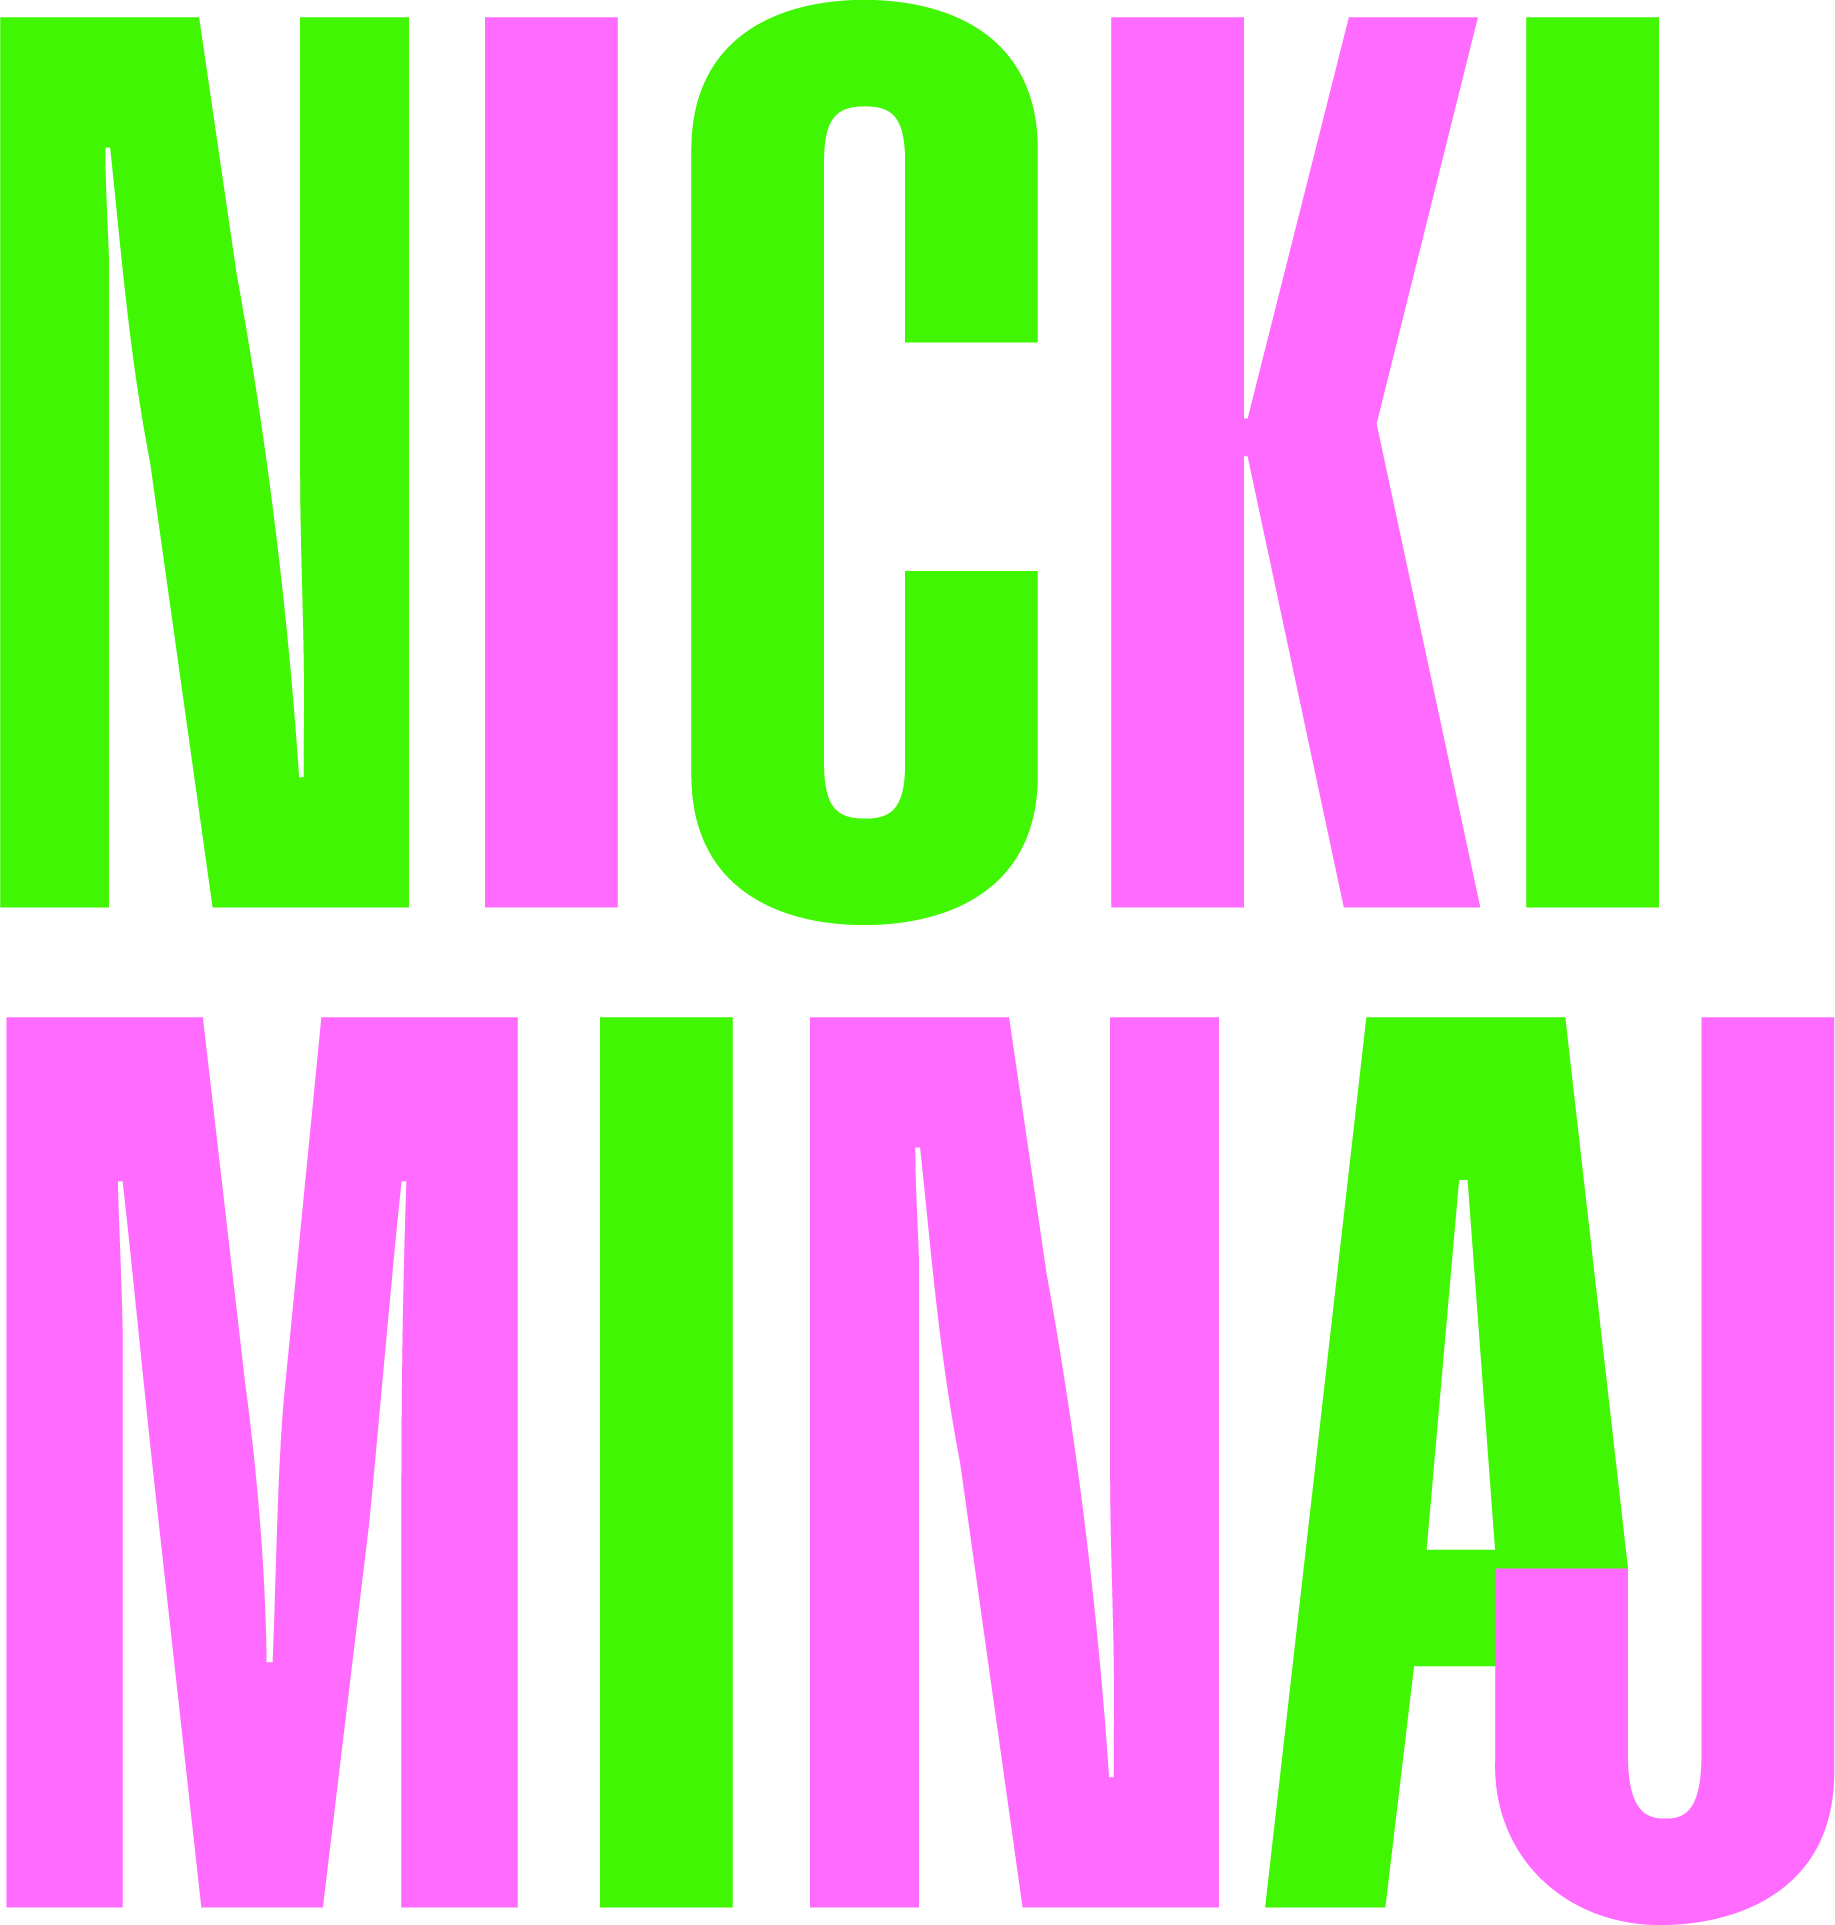 Nicki Minaj Logo - Nicki Minaj | Logopedia | FANDOM powered by Wikia